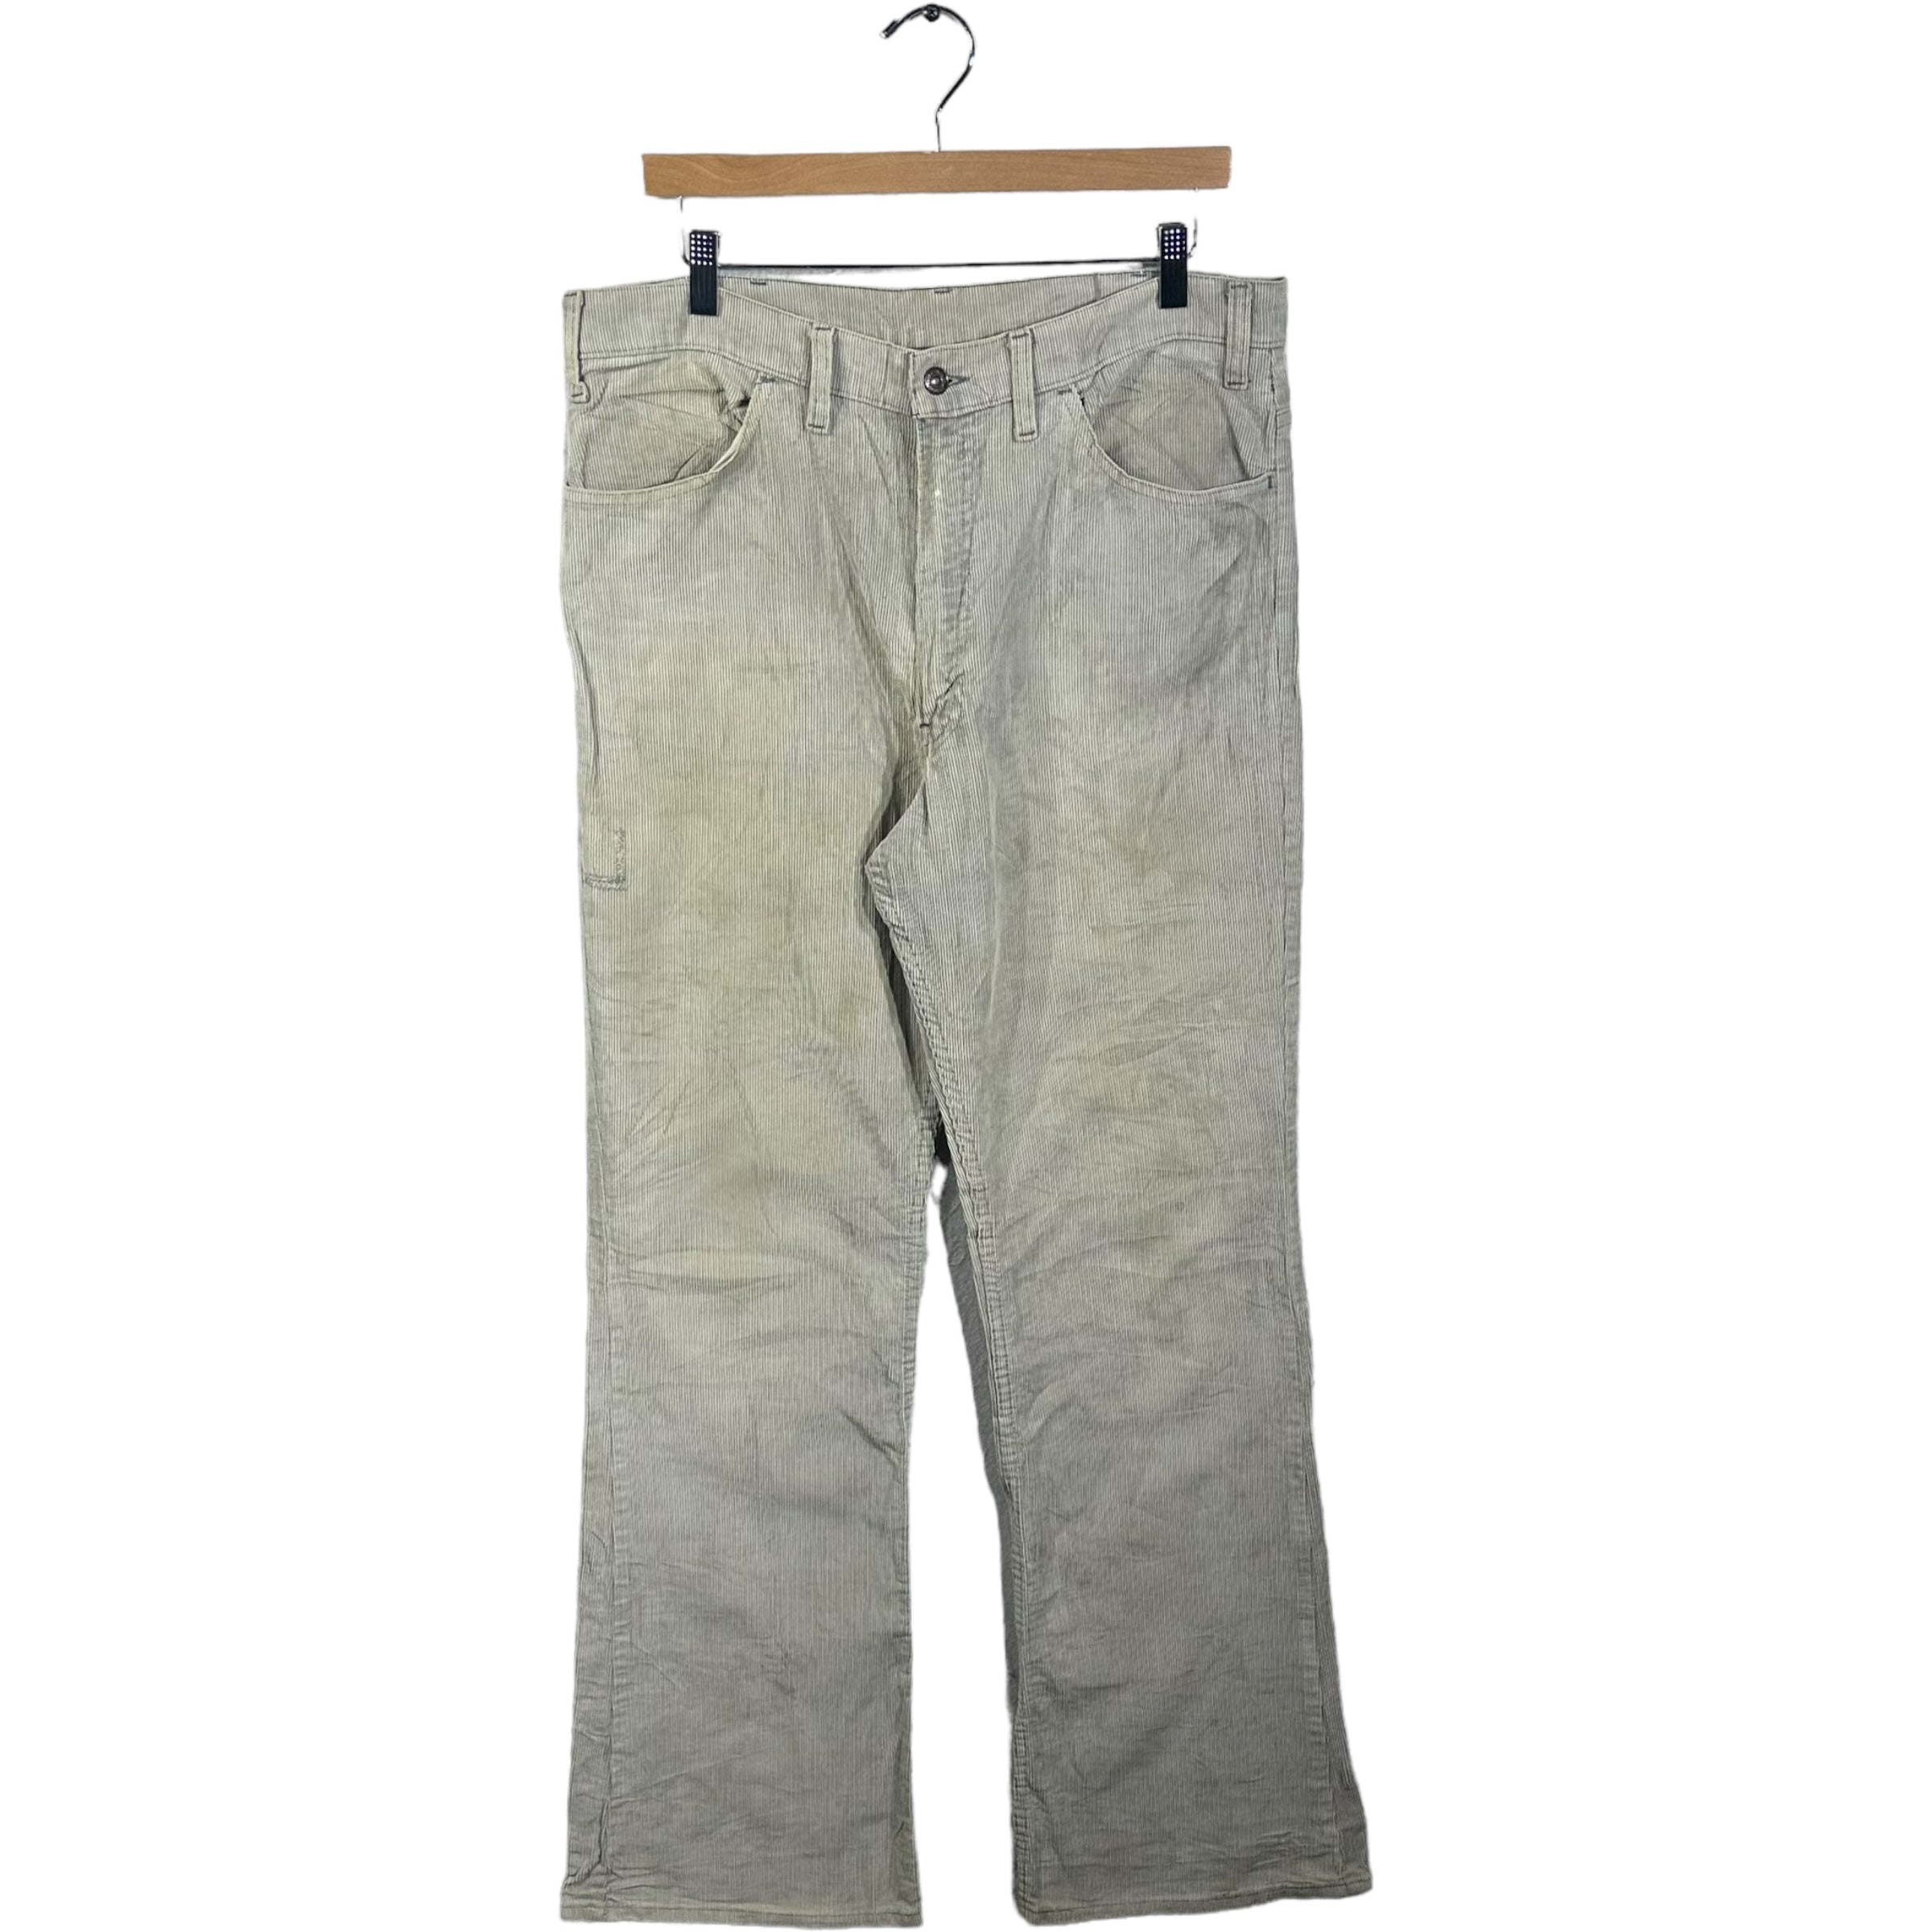 Vintage Levis Corduroy Pants